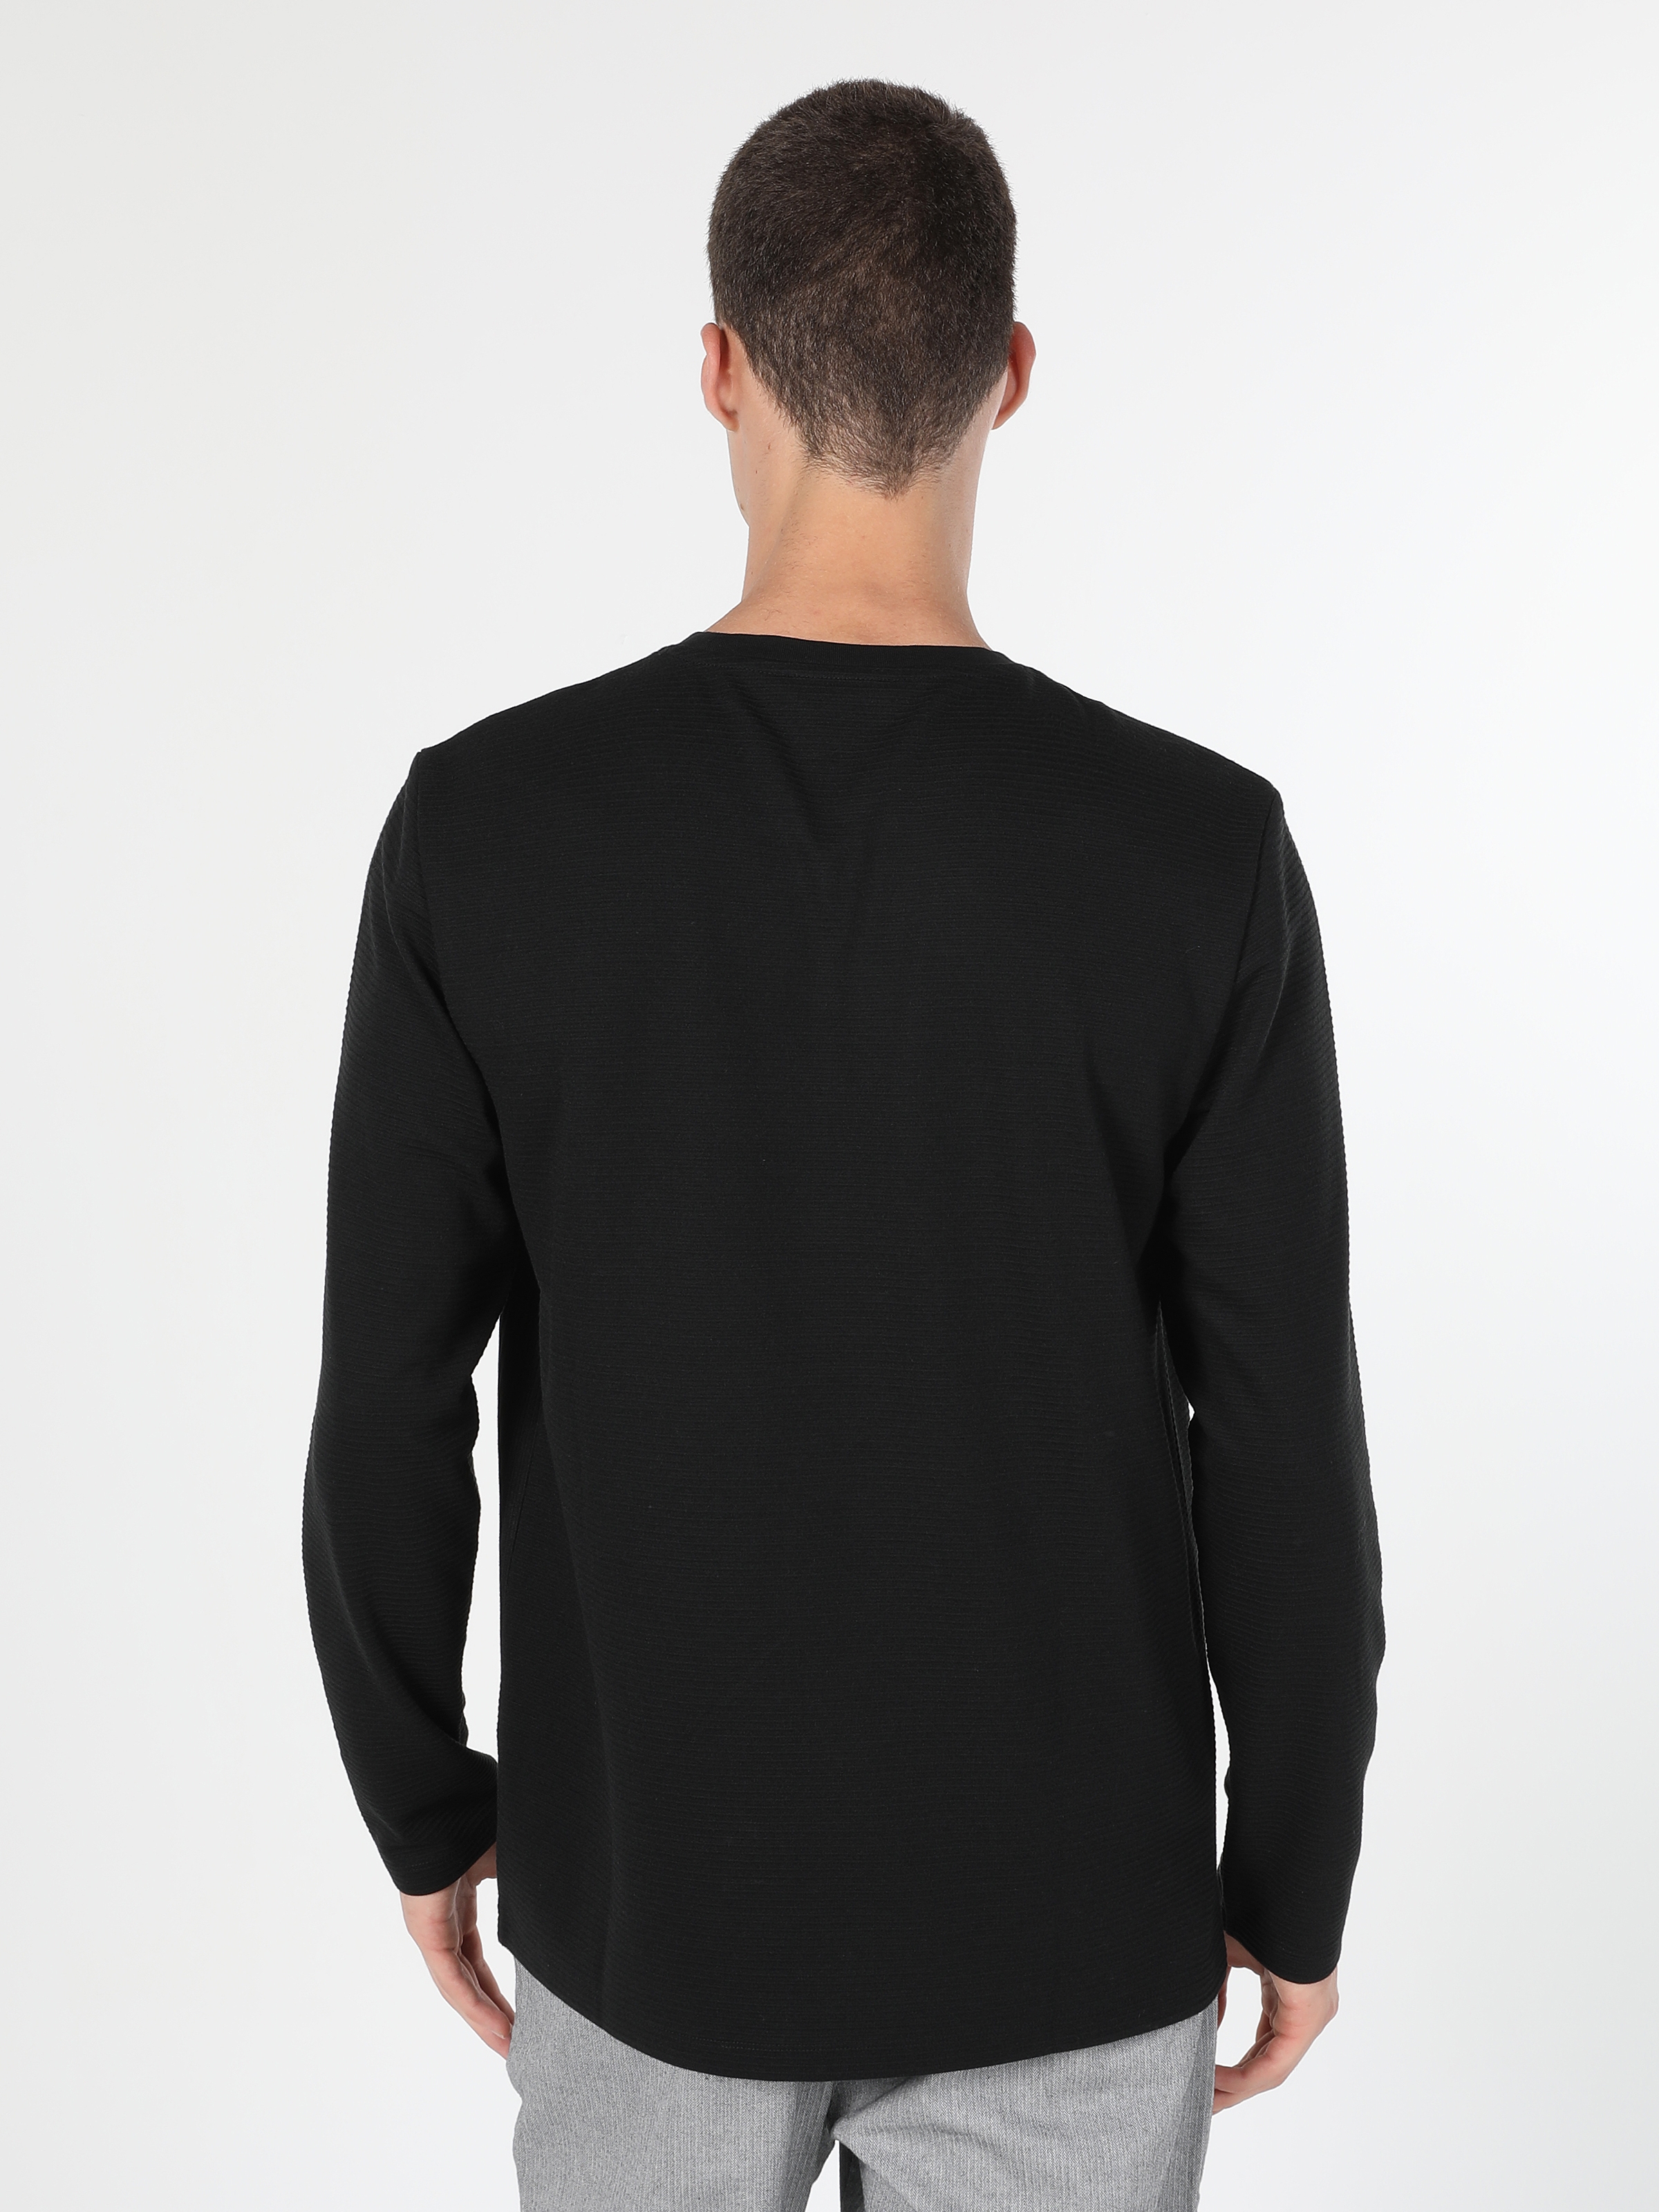 Afișați detalii pentru Tricou Cu Maneca Lunga De Barbati Negru Regular Fit  CL1060211